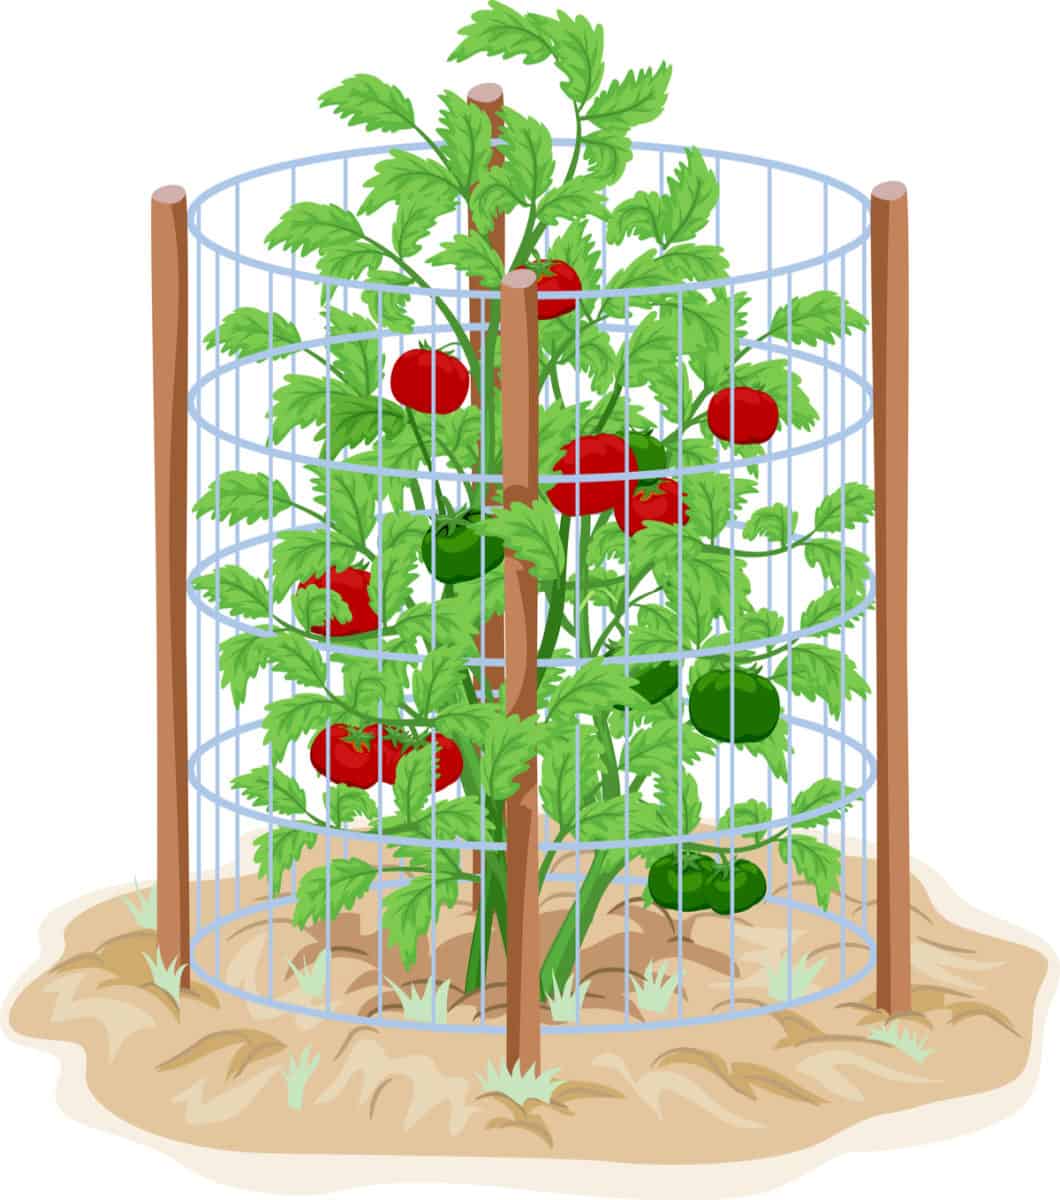 Cages à tomates : comment les utiliser, les meilleurs types et un type que vous ne devriez pas utiliser